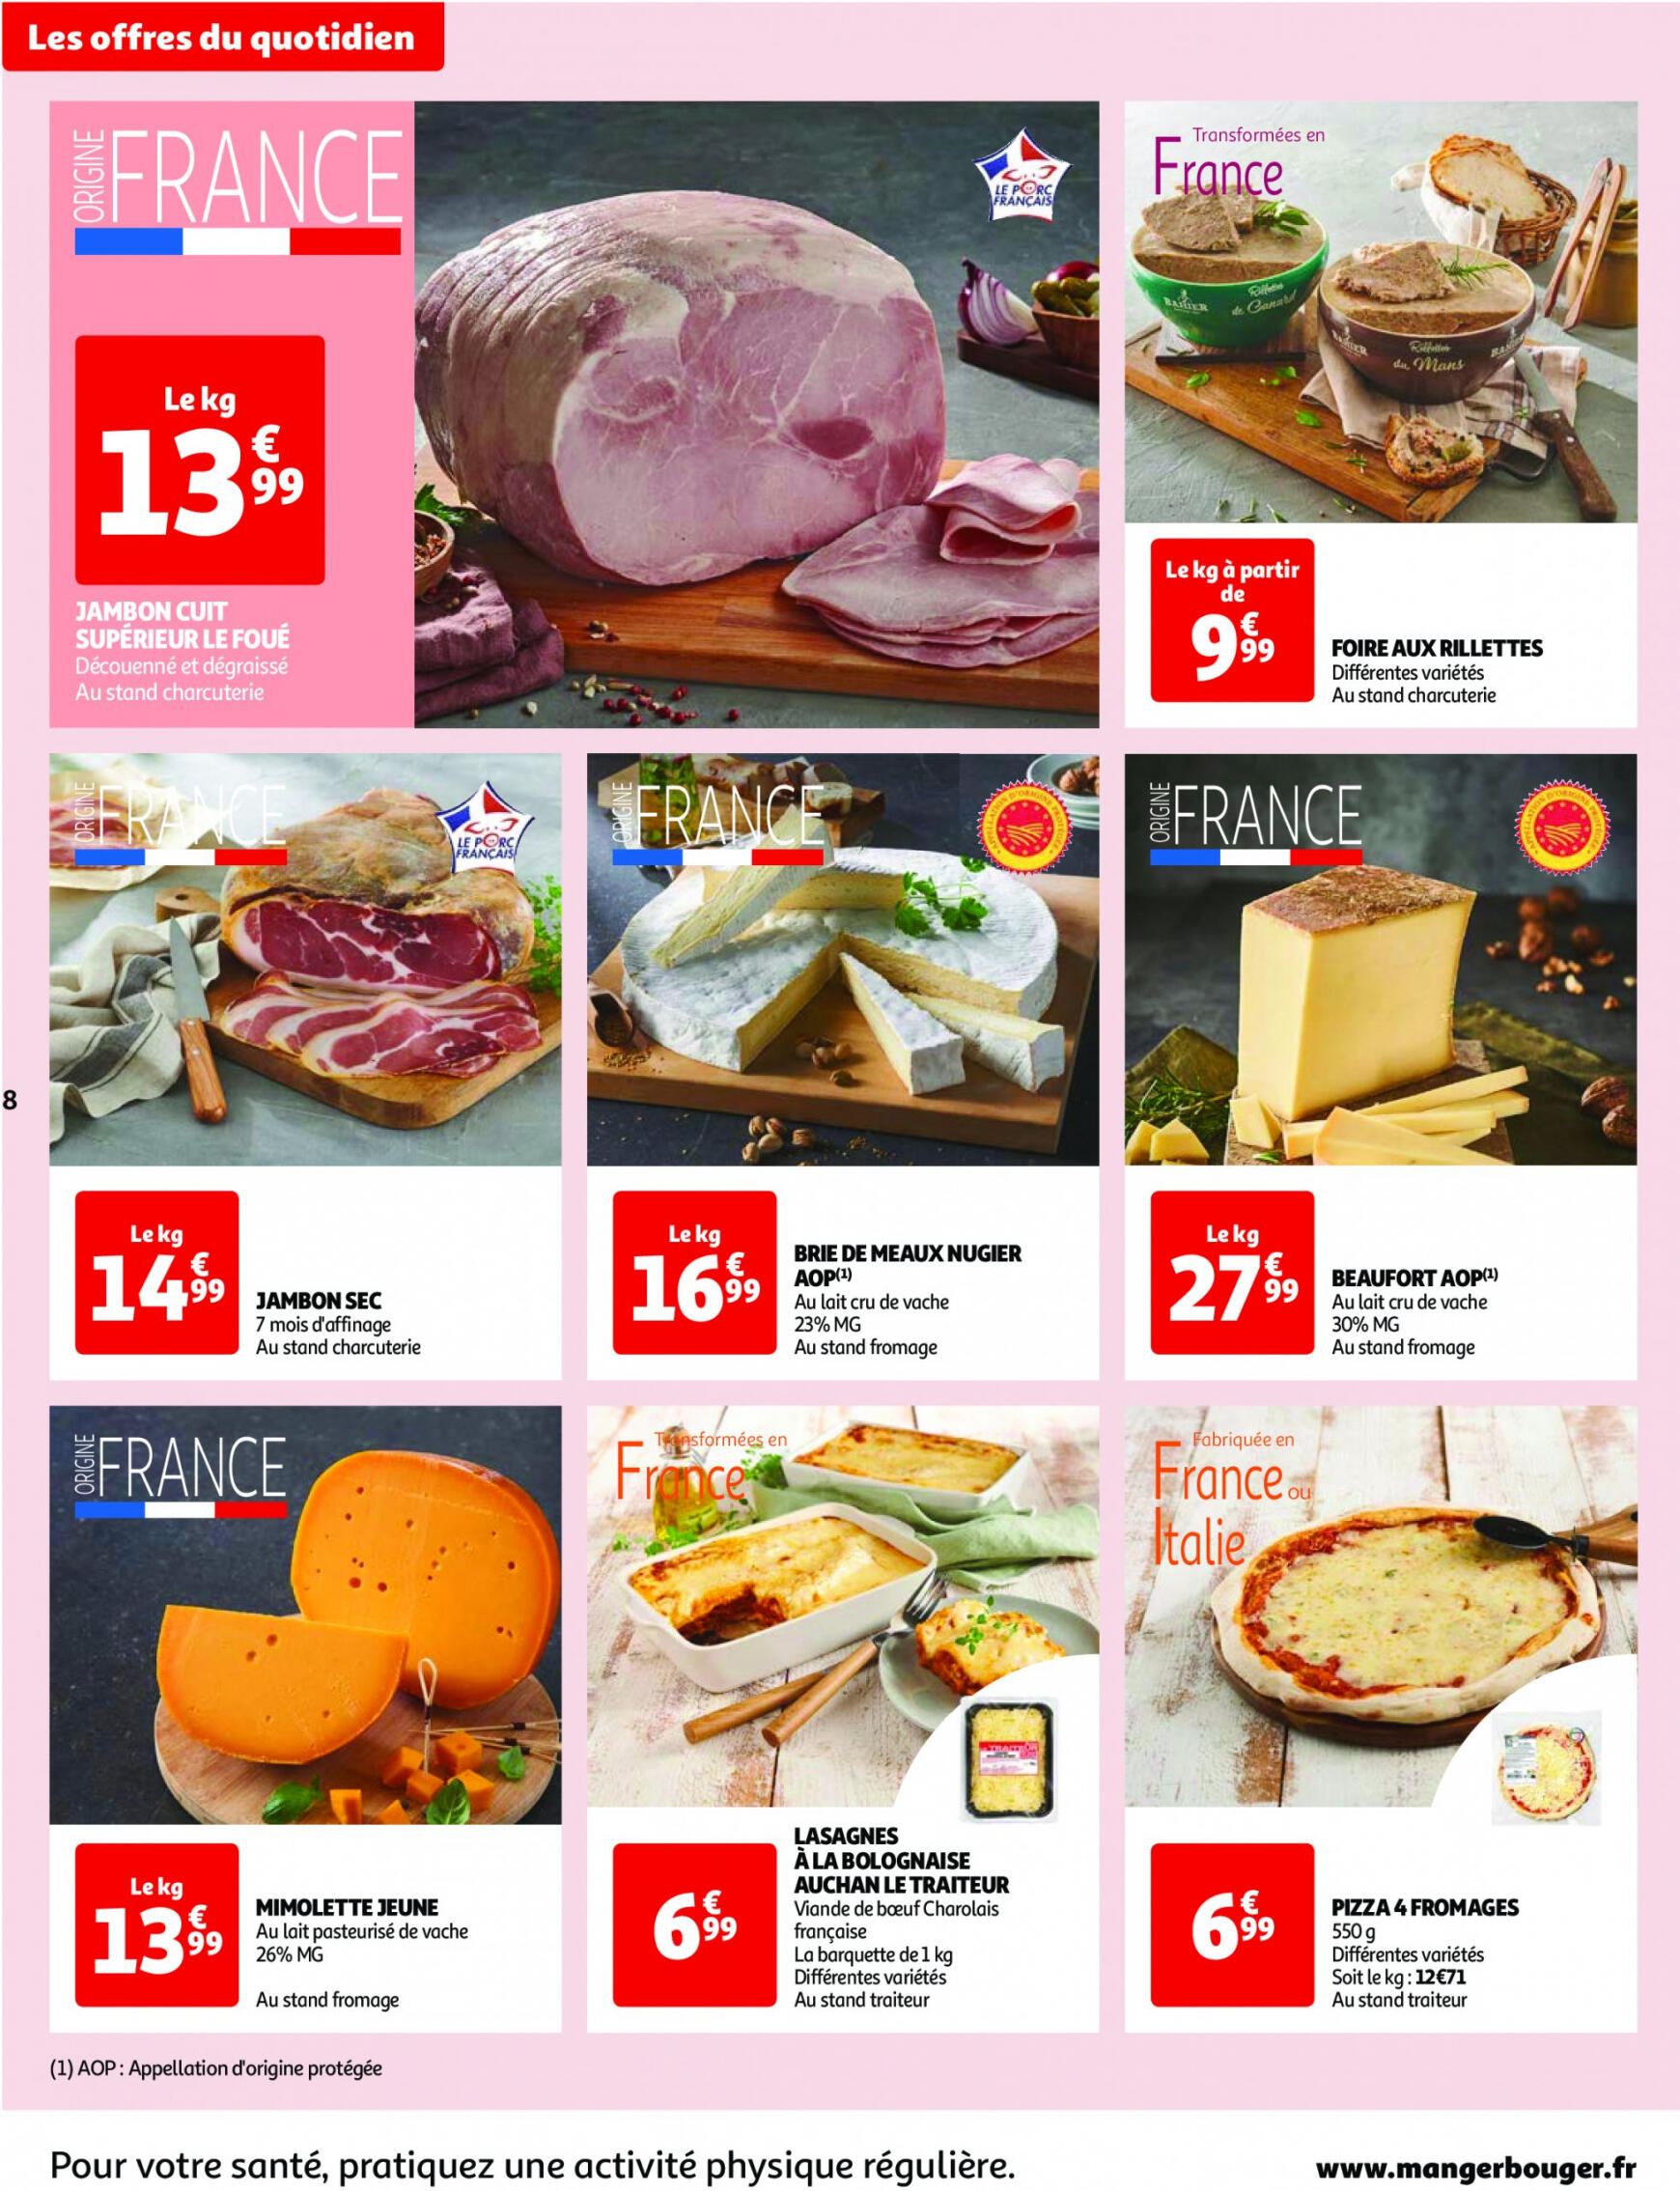 auchan - Prospectus Auchan actuel 14.05. - 21.05. - page: 8